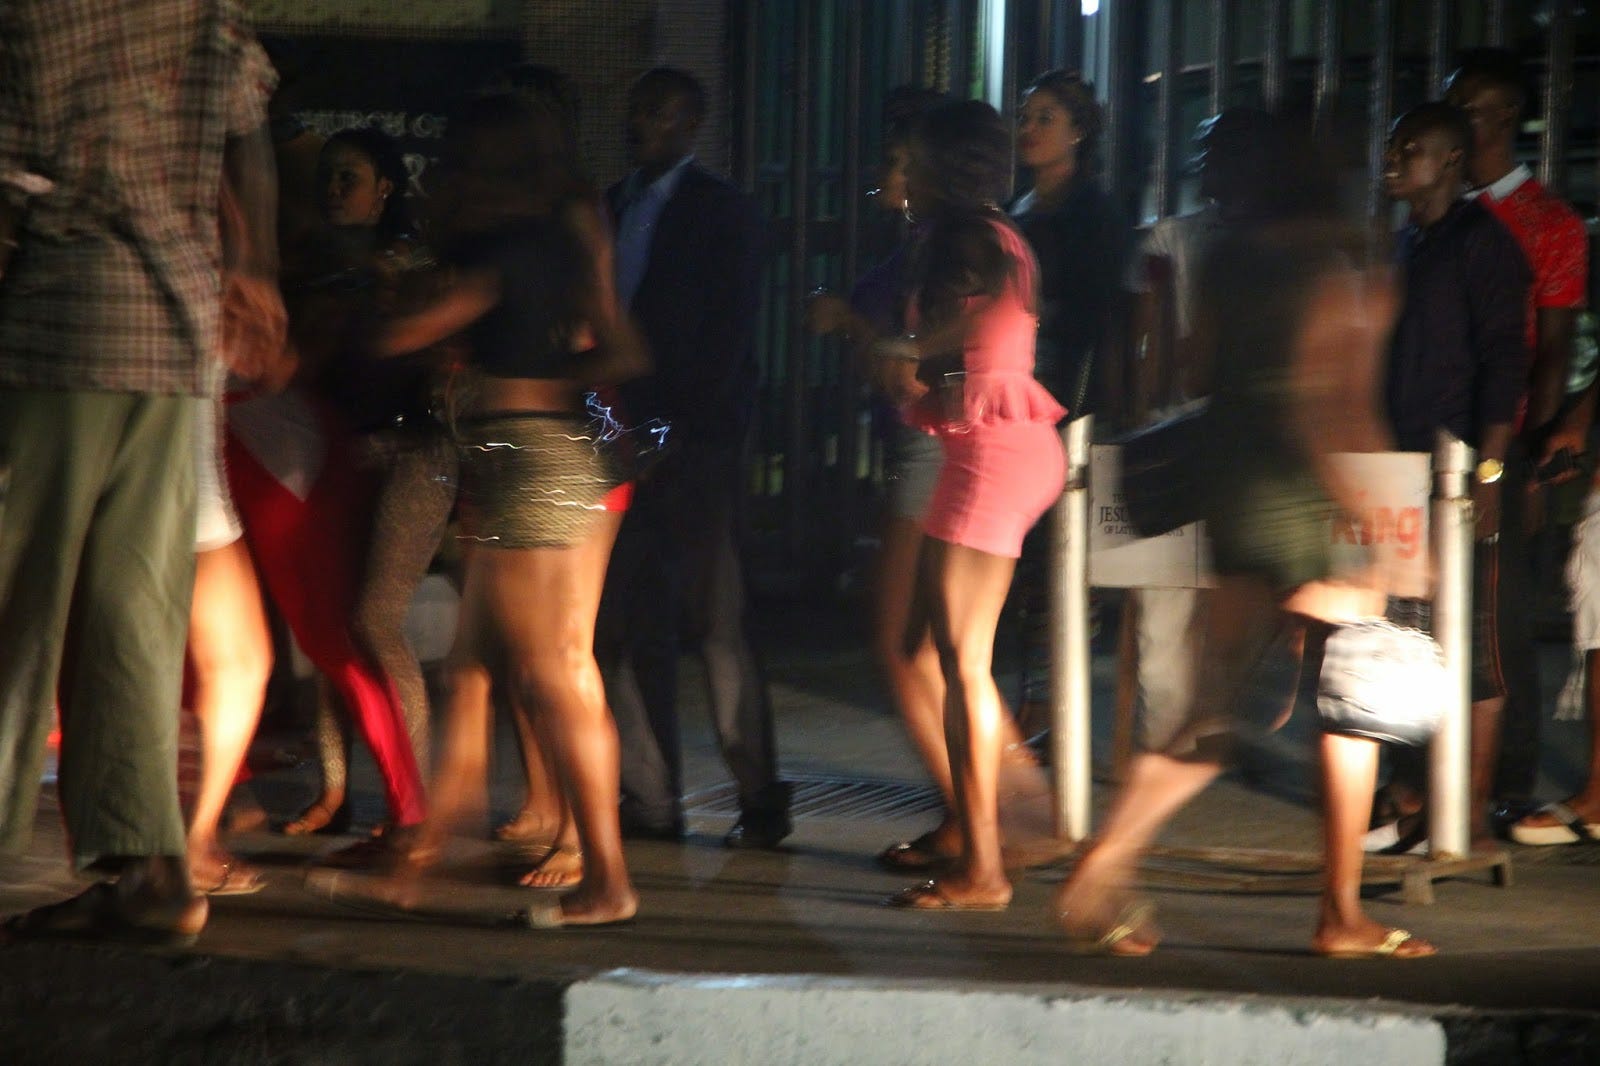 Lagos prostitutes earn N210,000 per week, Others make N70, 000 by Ediale Kingsley Medium